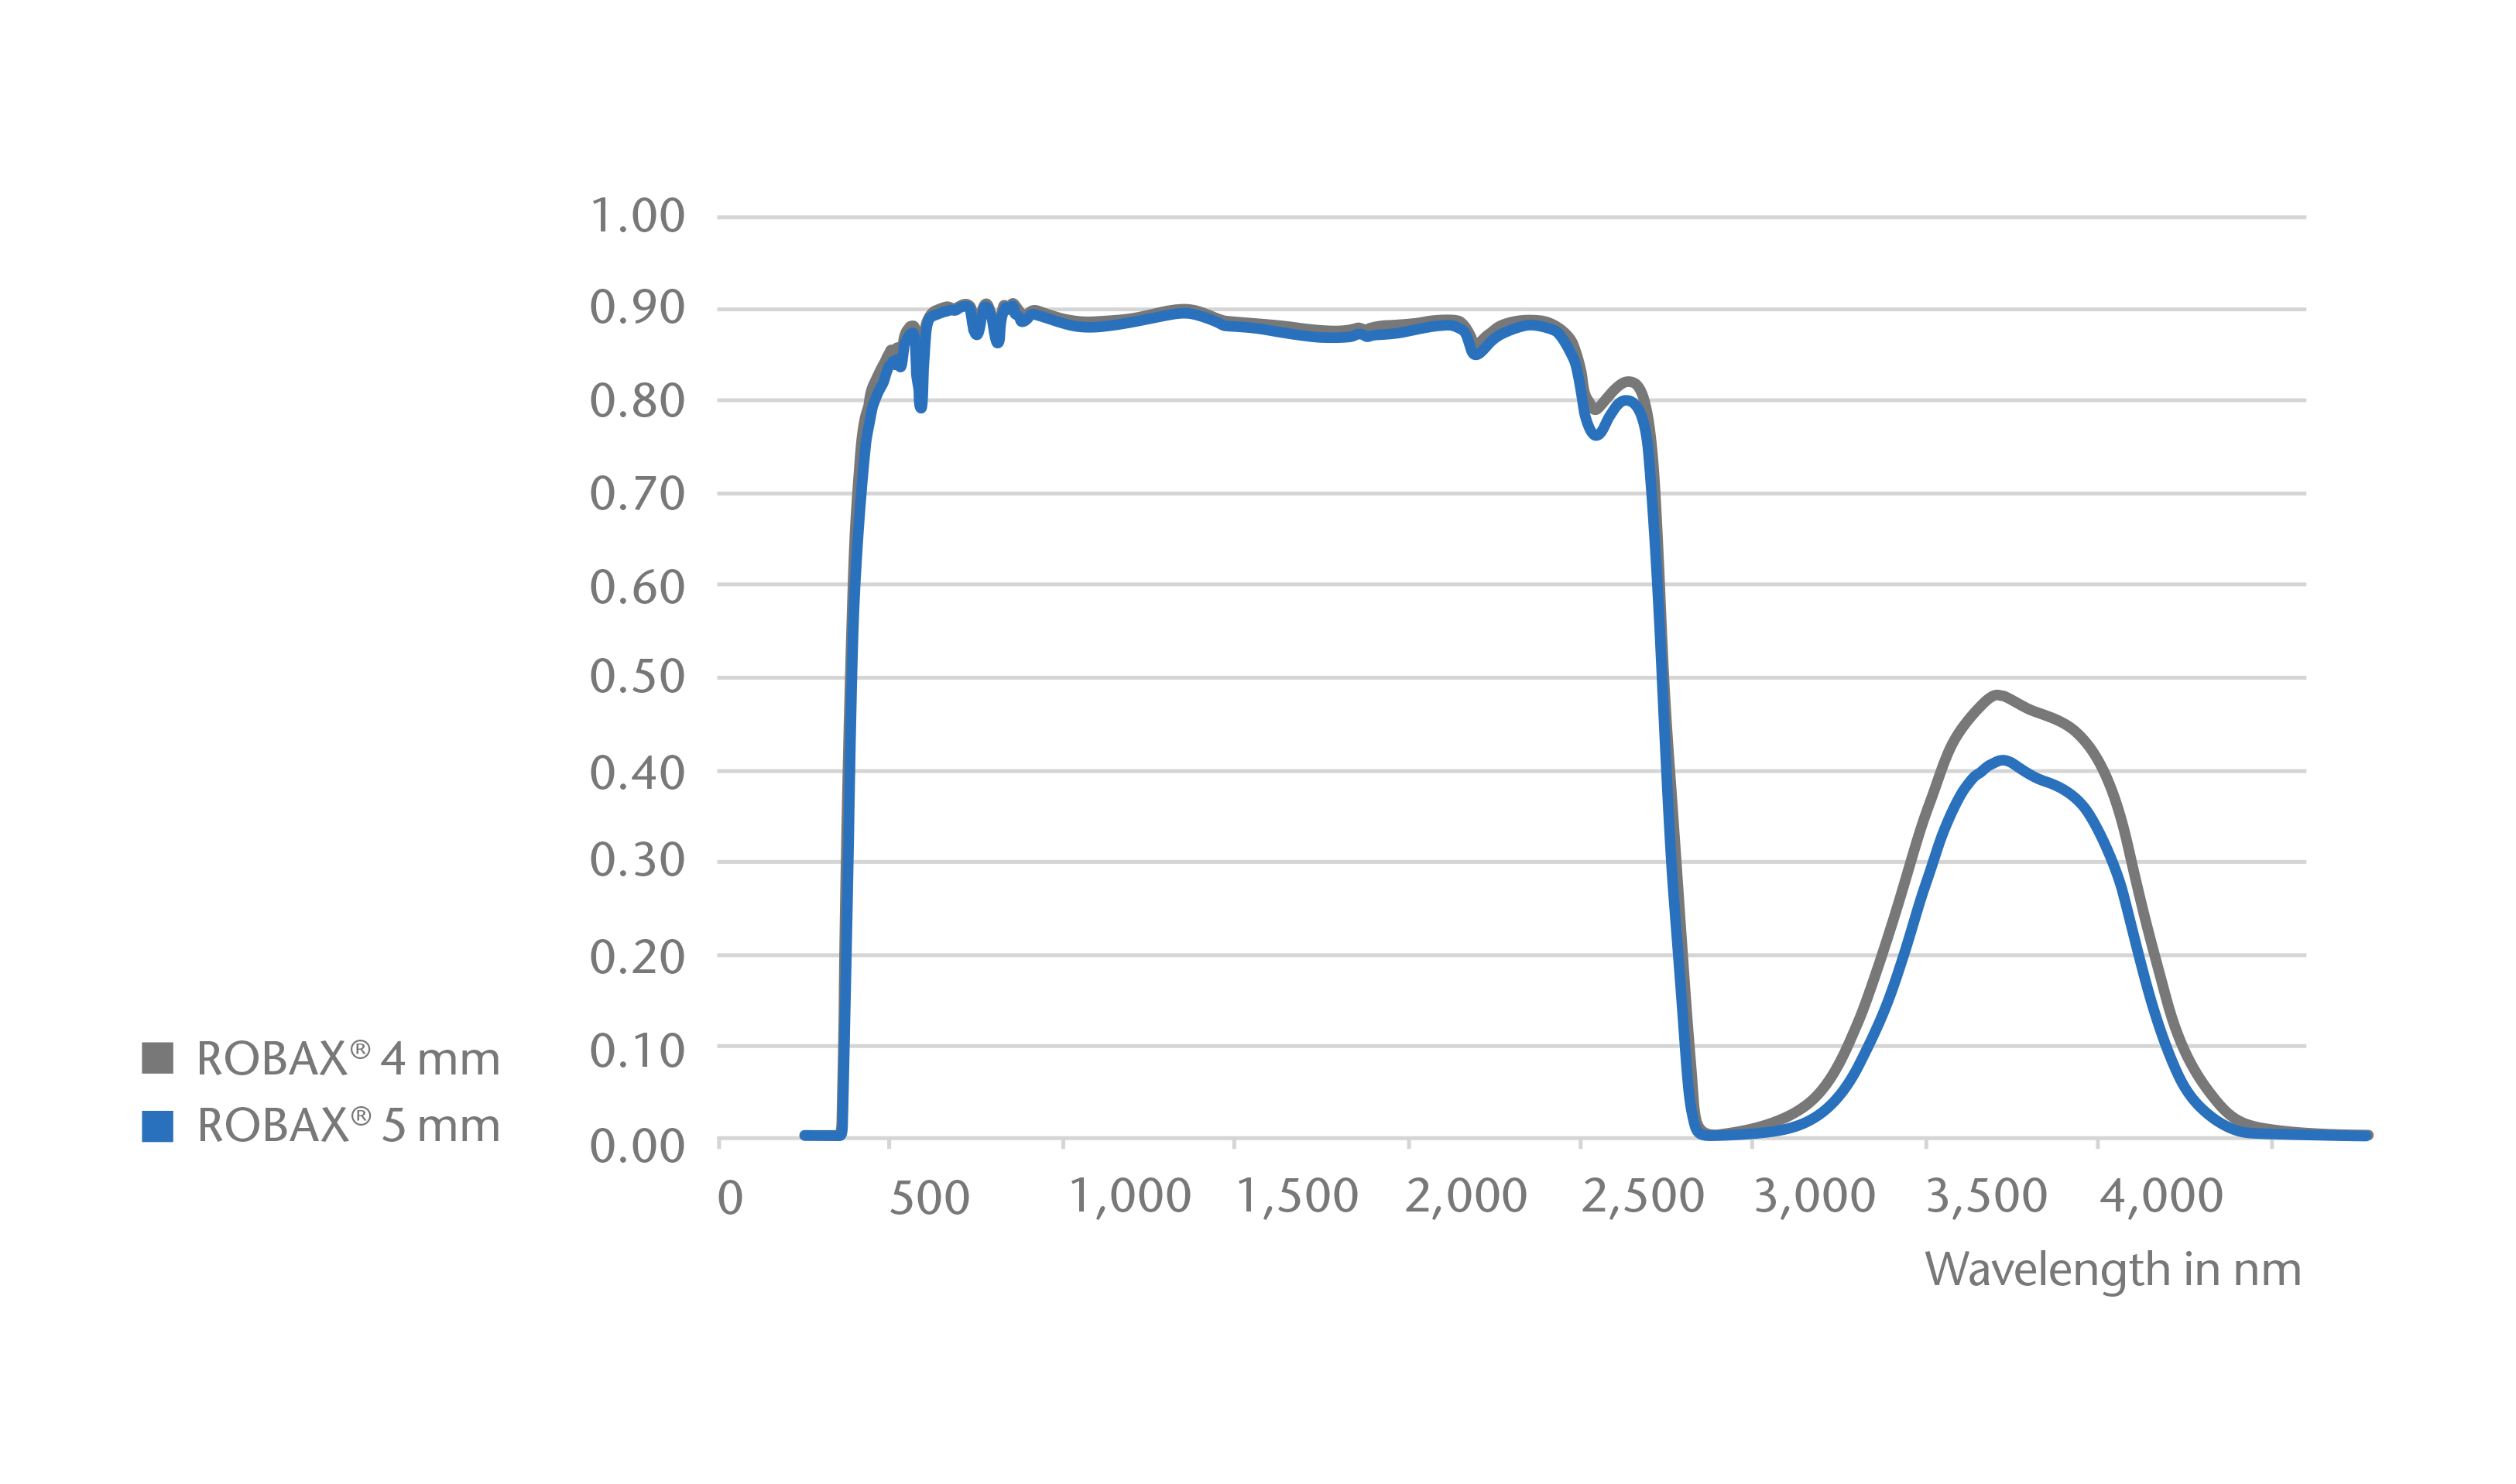 Gráfico que muestra la curva de transmisión de SCHOTT ROBAX® en espesores de 4 mm y 5 mm